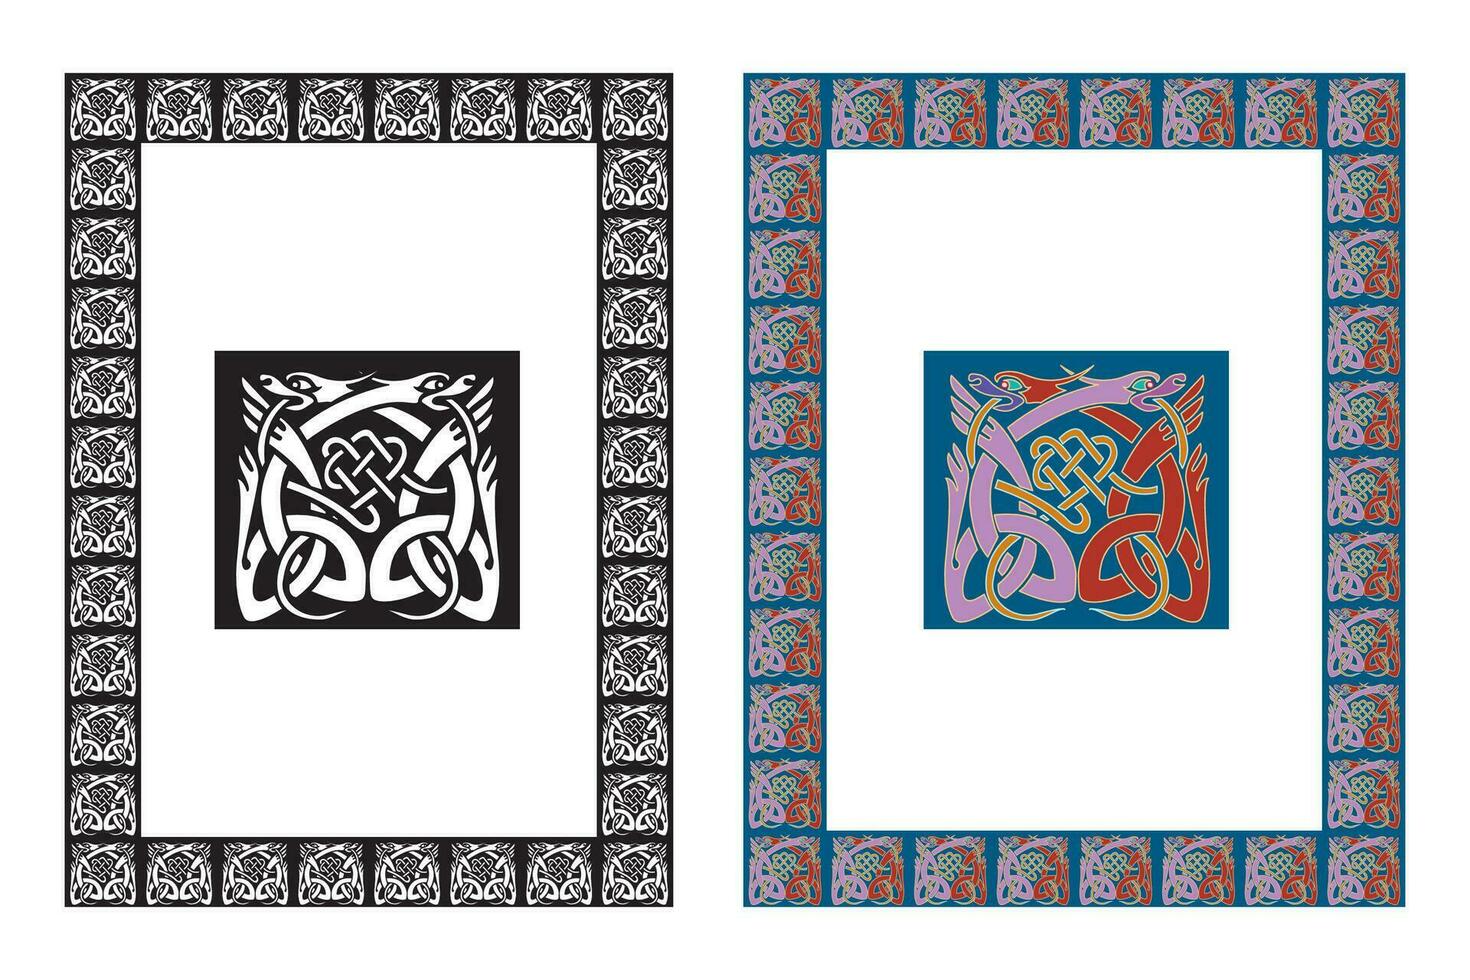 Clásico floral clásico caligráfico retro viñeta Desplazarse marcos ornamental diseño elementos negro y color conjunto aislado vector